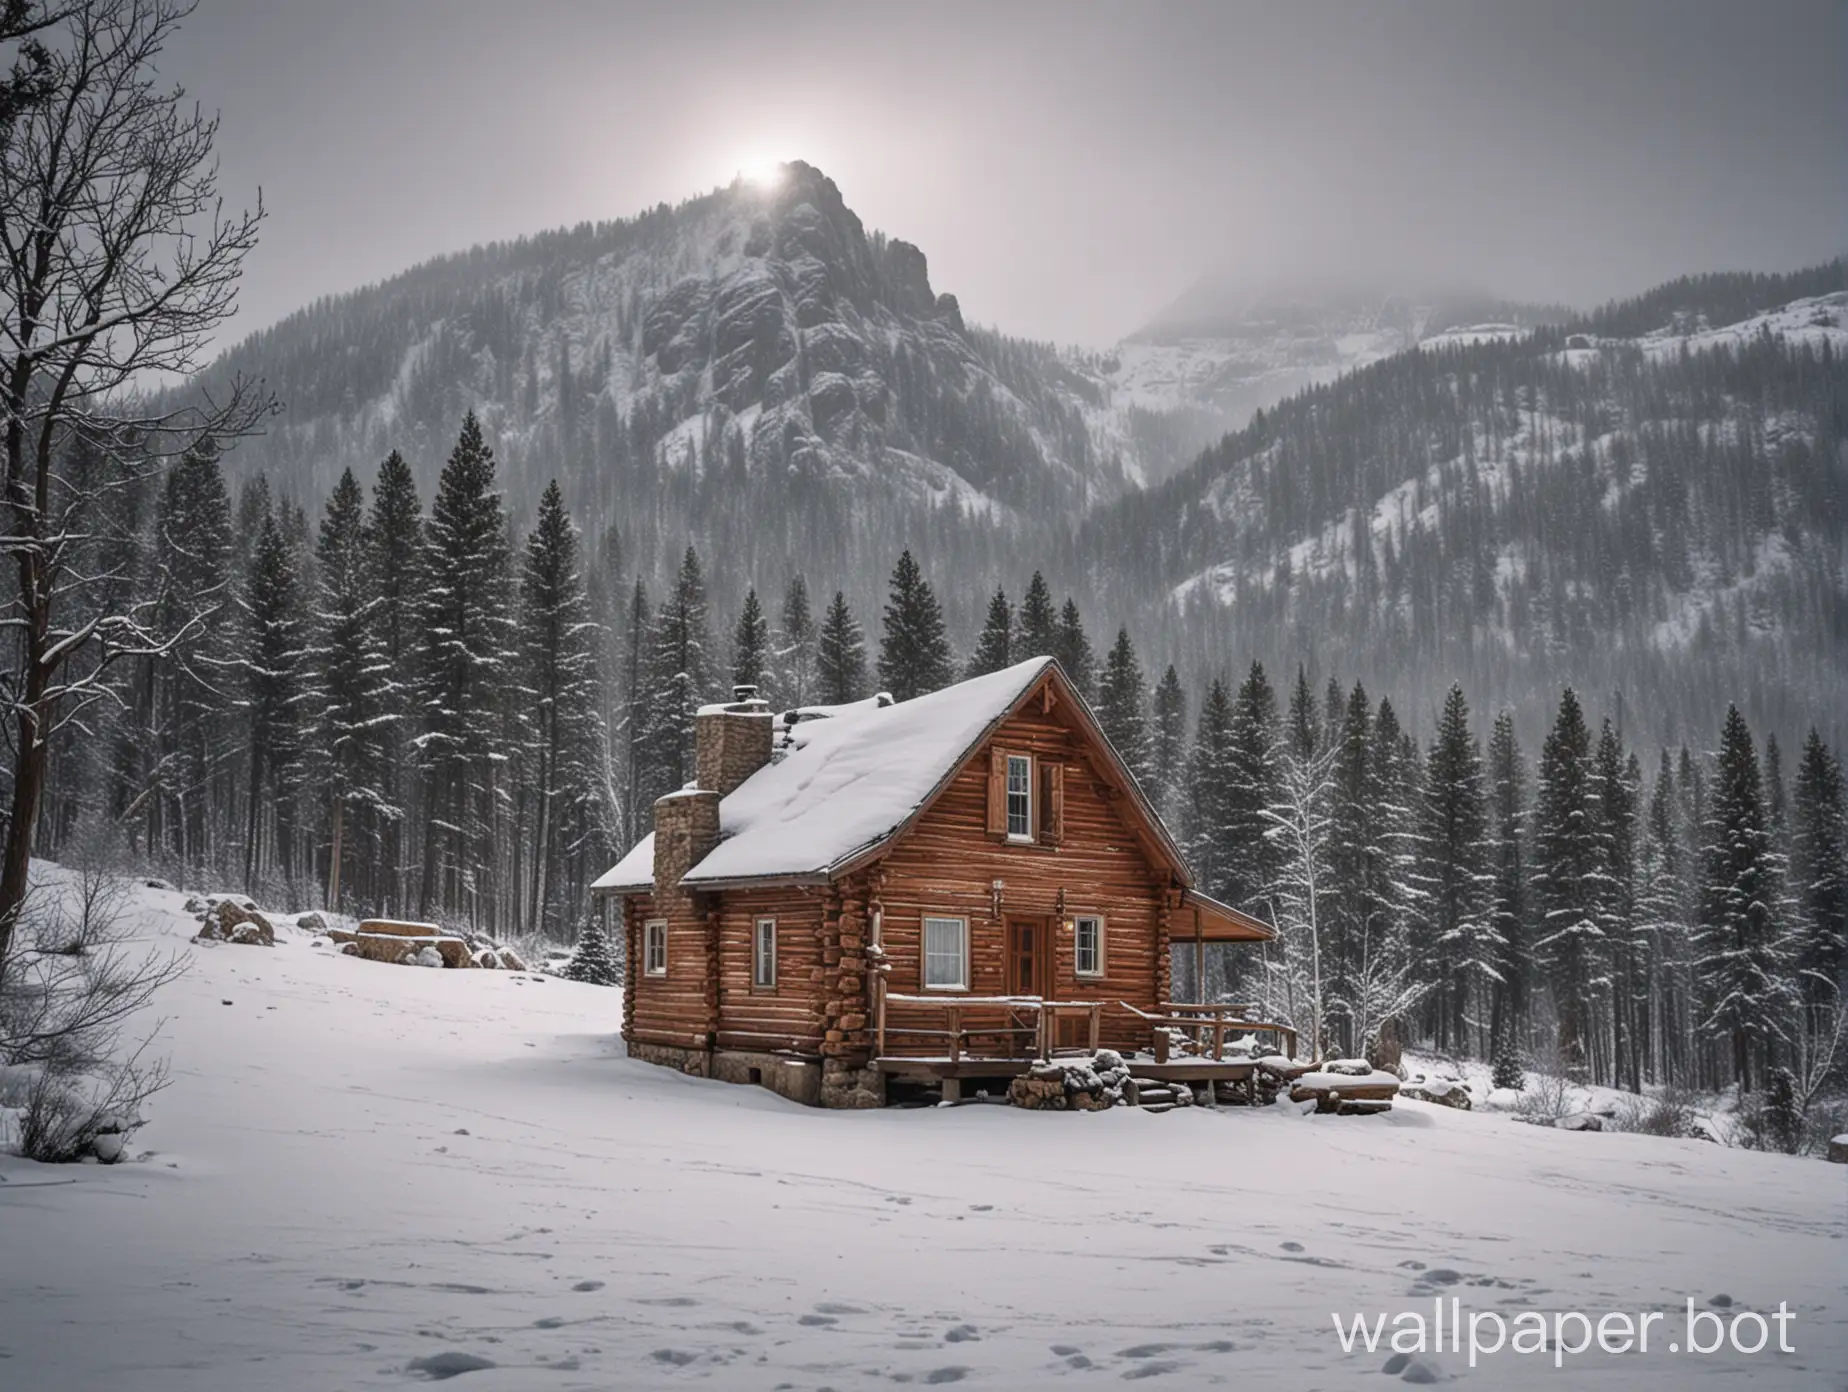 Cozy-Cabin-Retreat-in-Snowy-Mountain-Winter-Wonderland